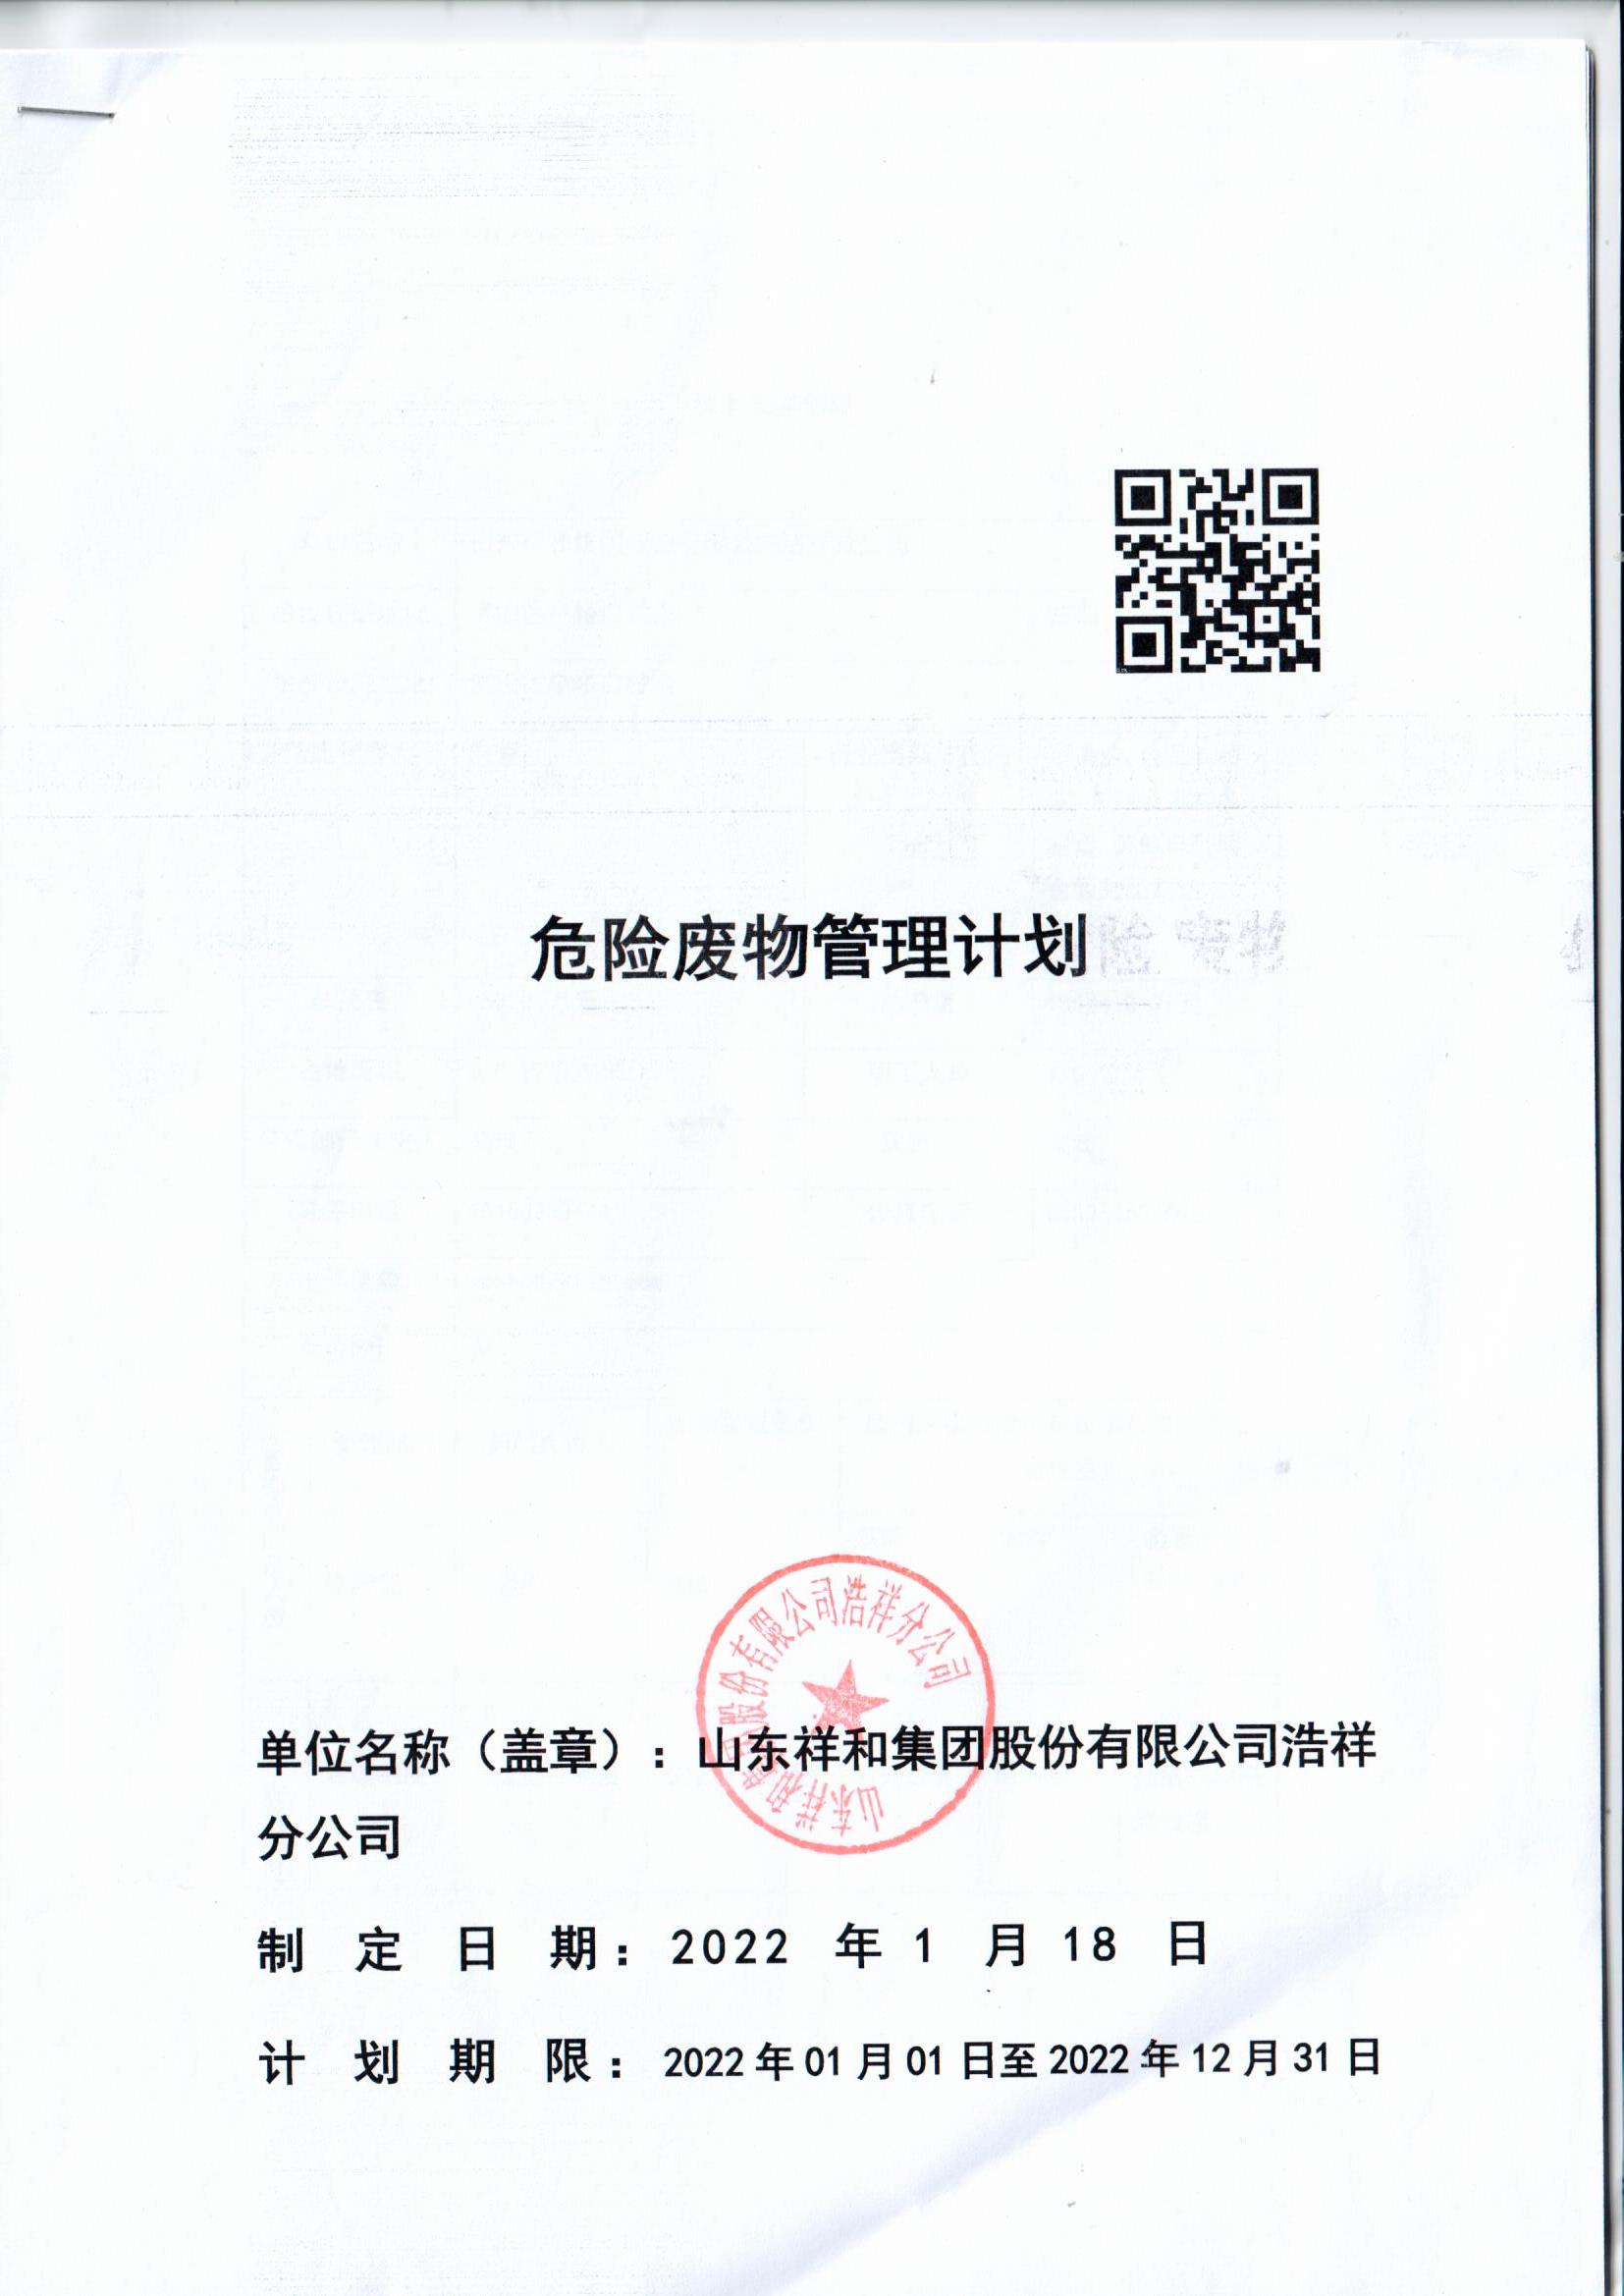 皇冠crown官网(中国)有限公司官网浩祥分公司2022年度危险废物管理信息公开